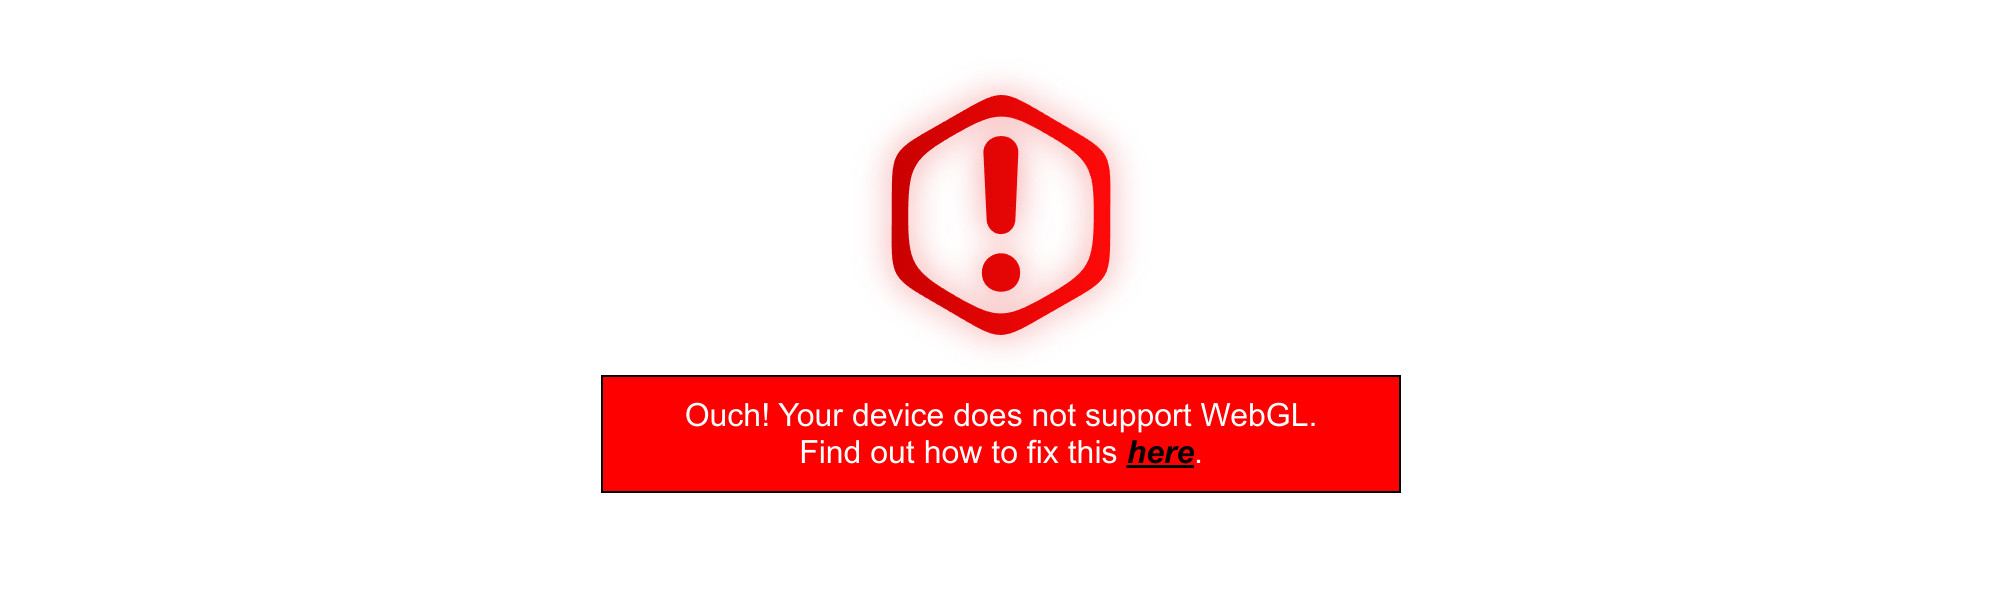 Customized WebGL error screen